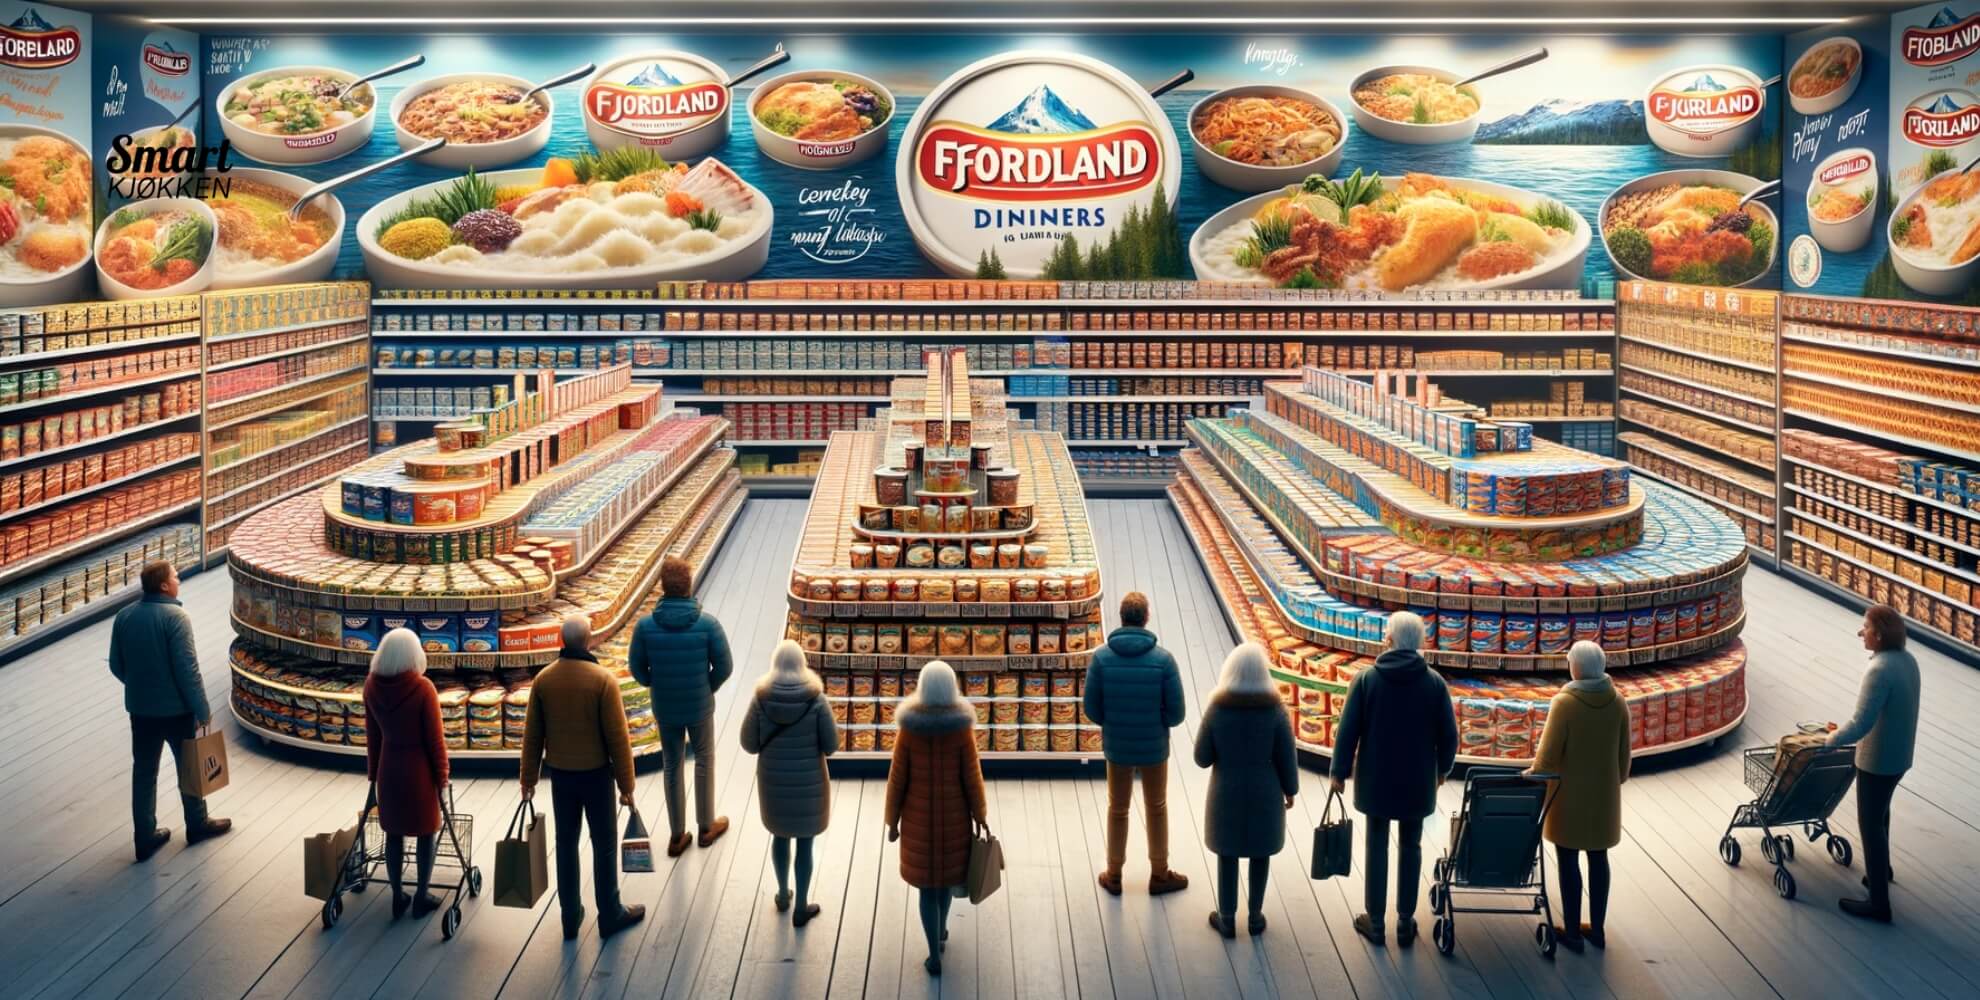 Bilde av personer som handler Fjordland middag på butikken.